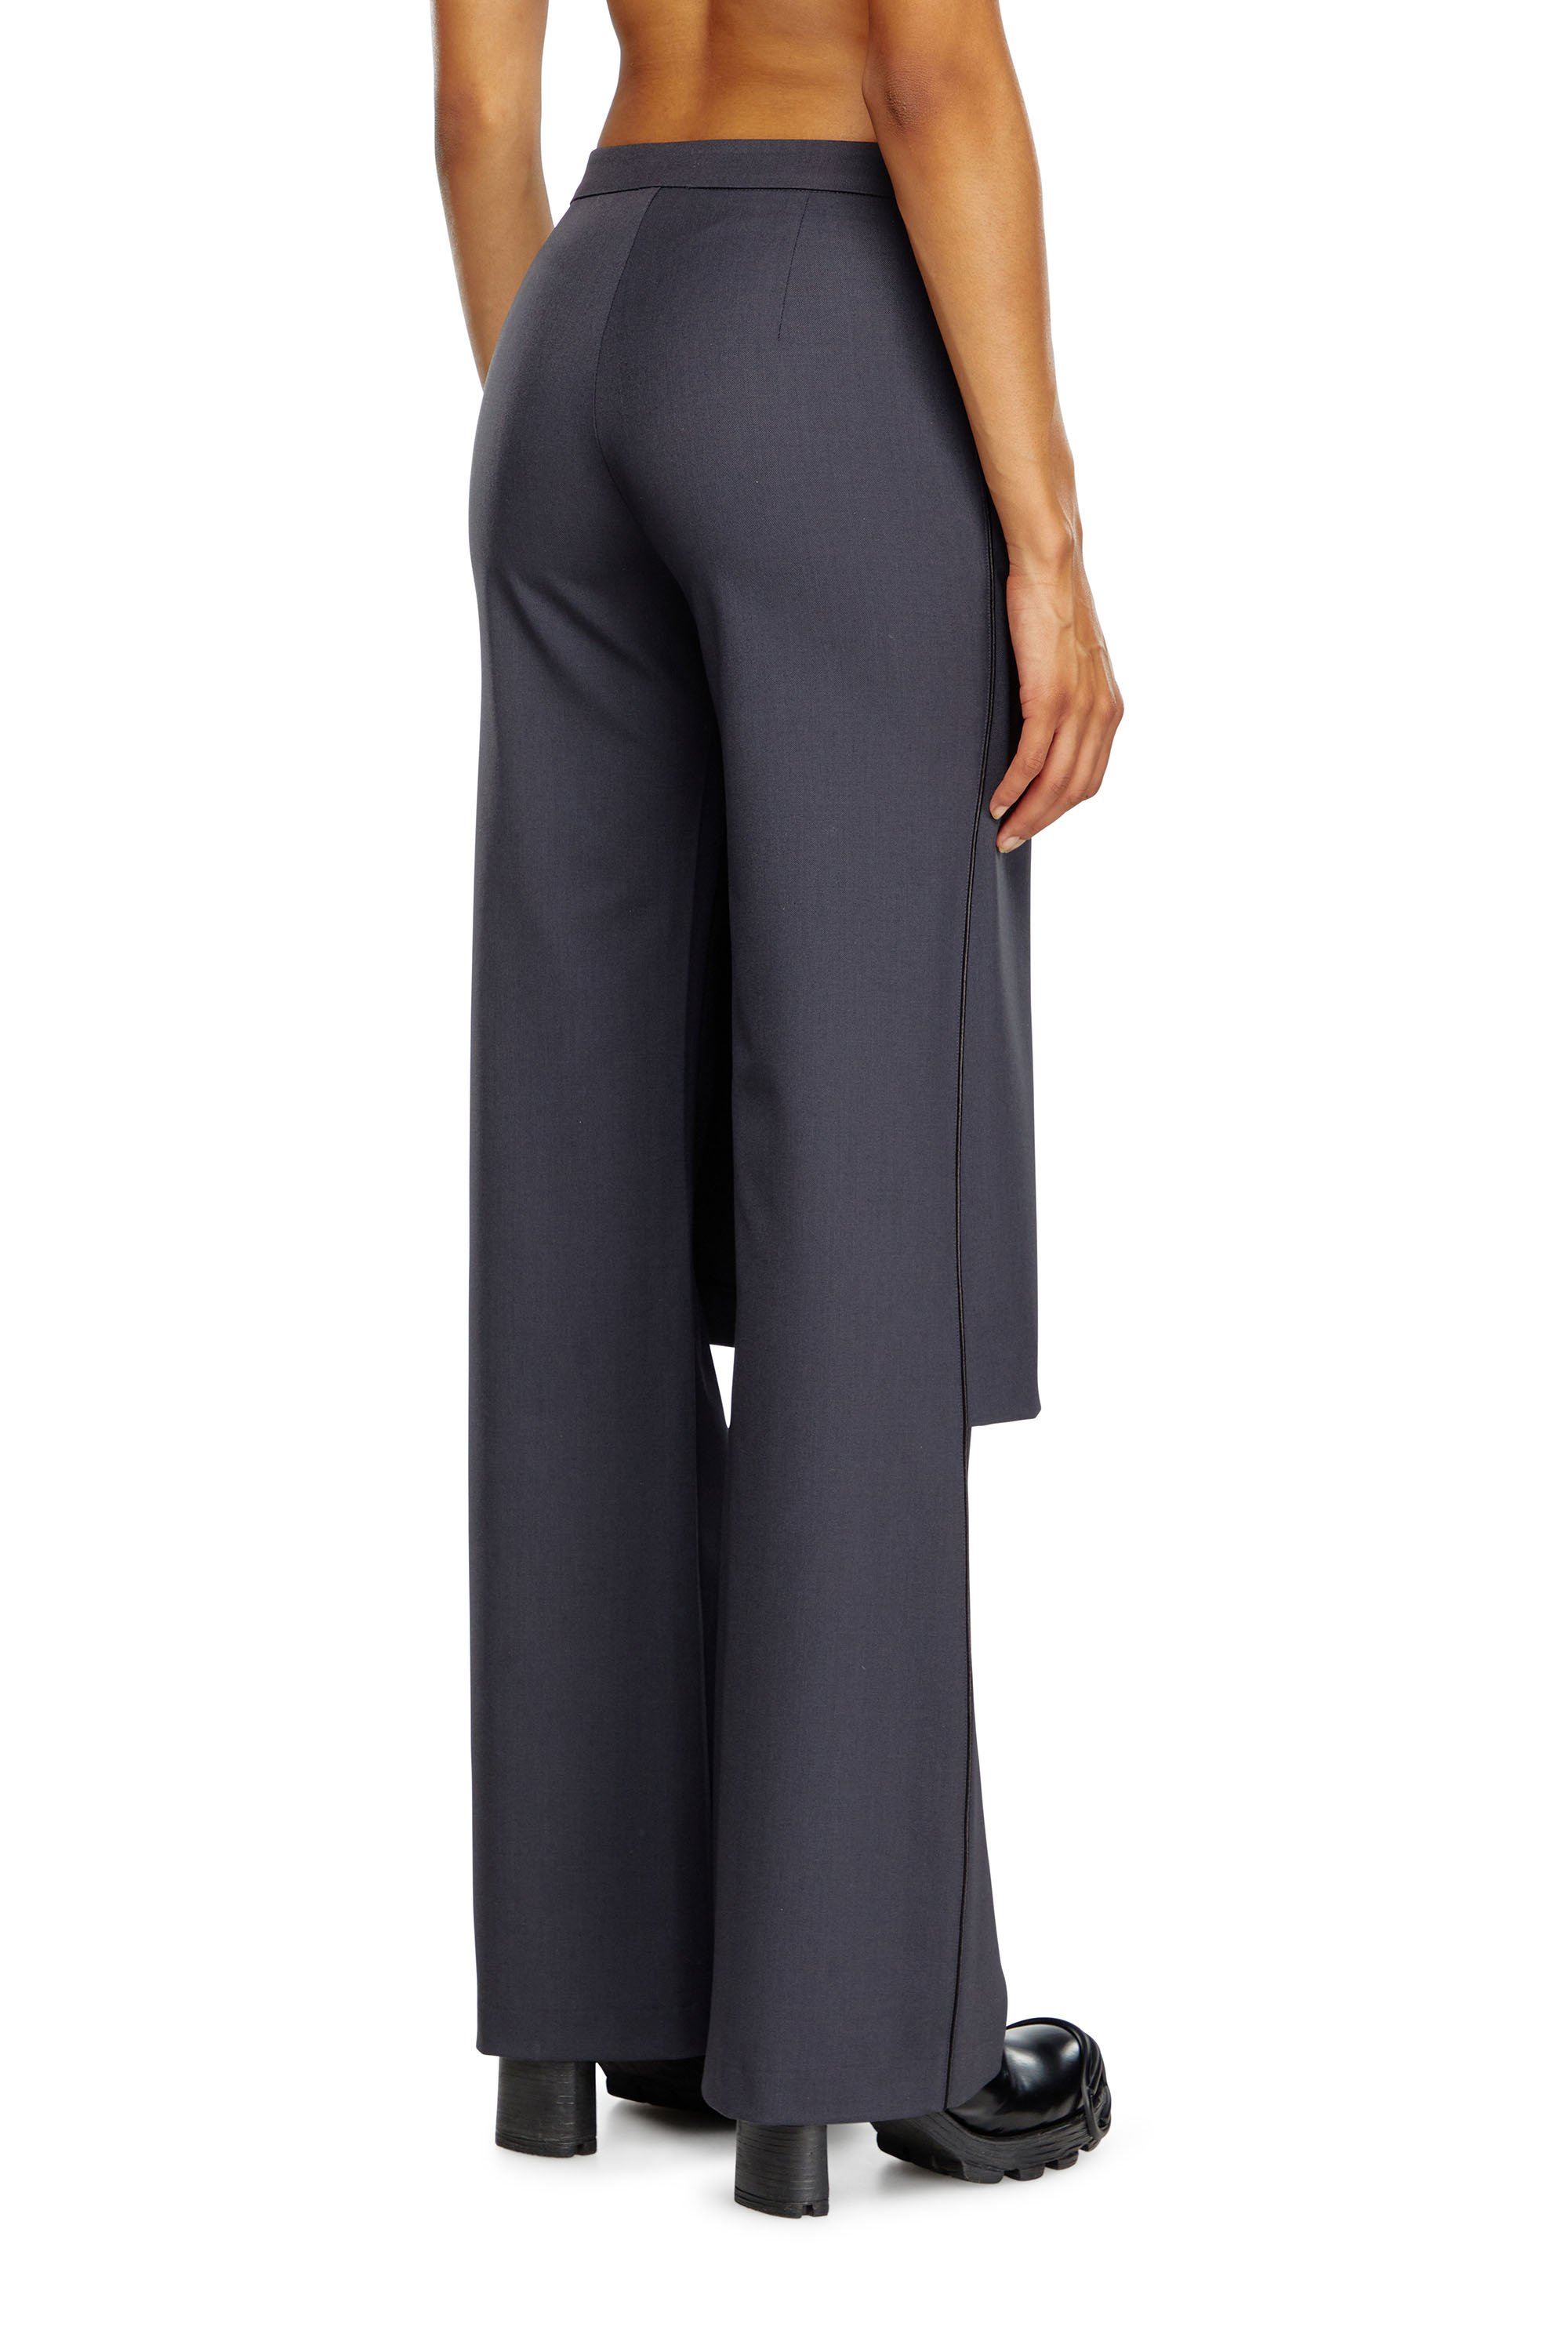 Diesel - P-EARL, Woman Hybrid skirt-pants in wool blend in Grey - Image 4